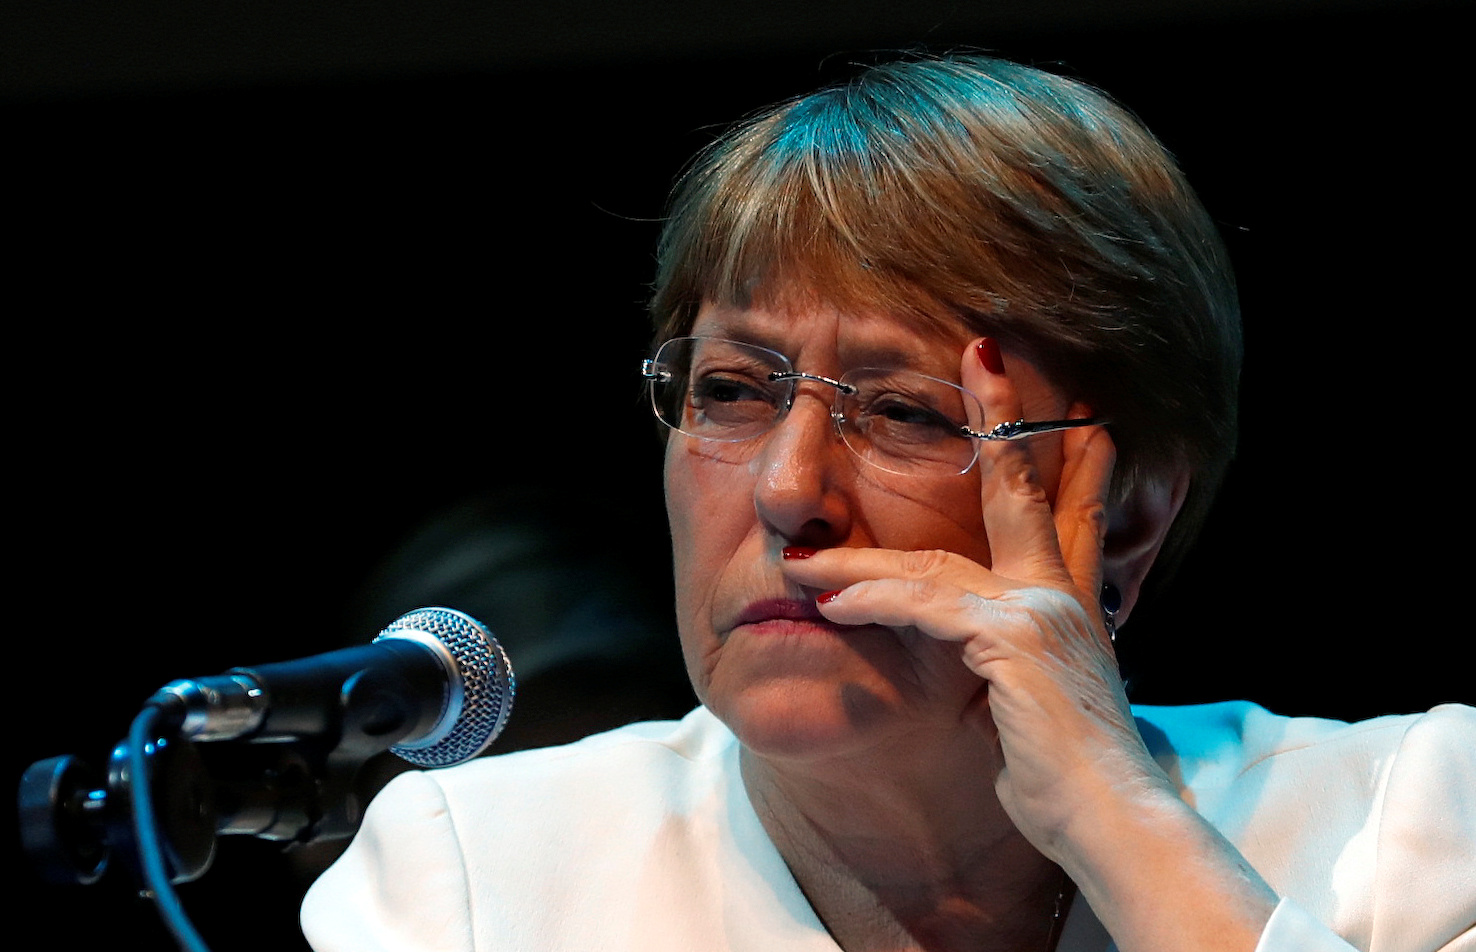 El mensaje de Bachelet sobre el rearme de Iván Márquez y su grupo narcoguerrillero